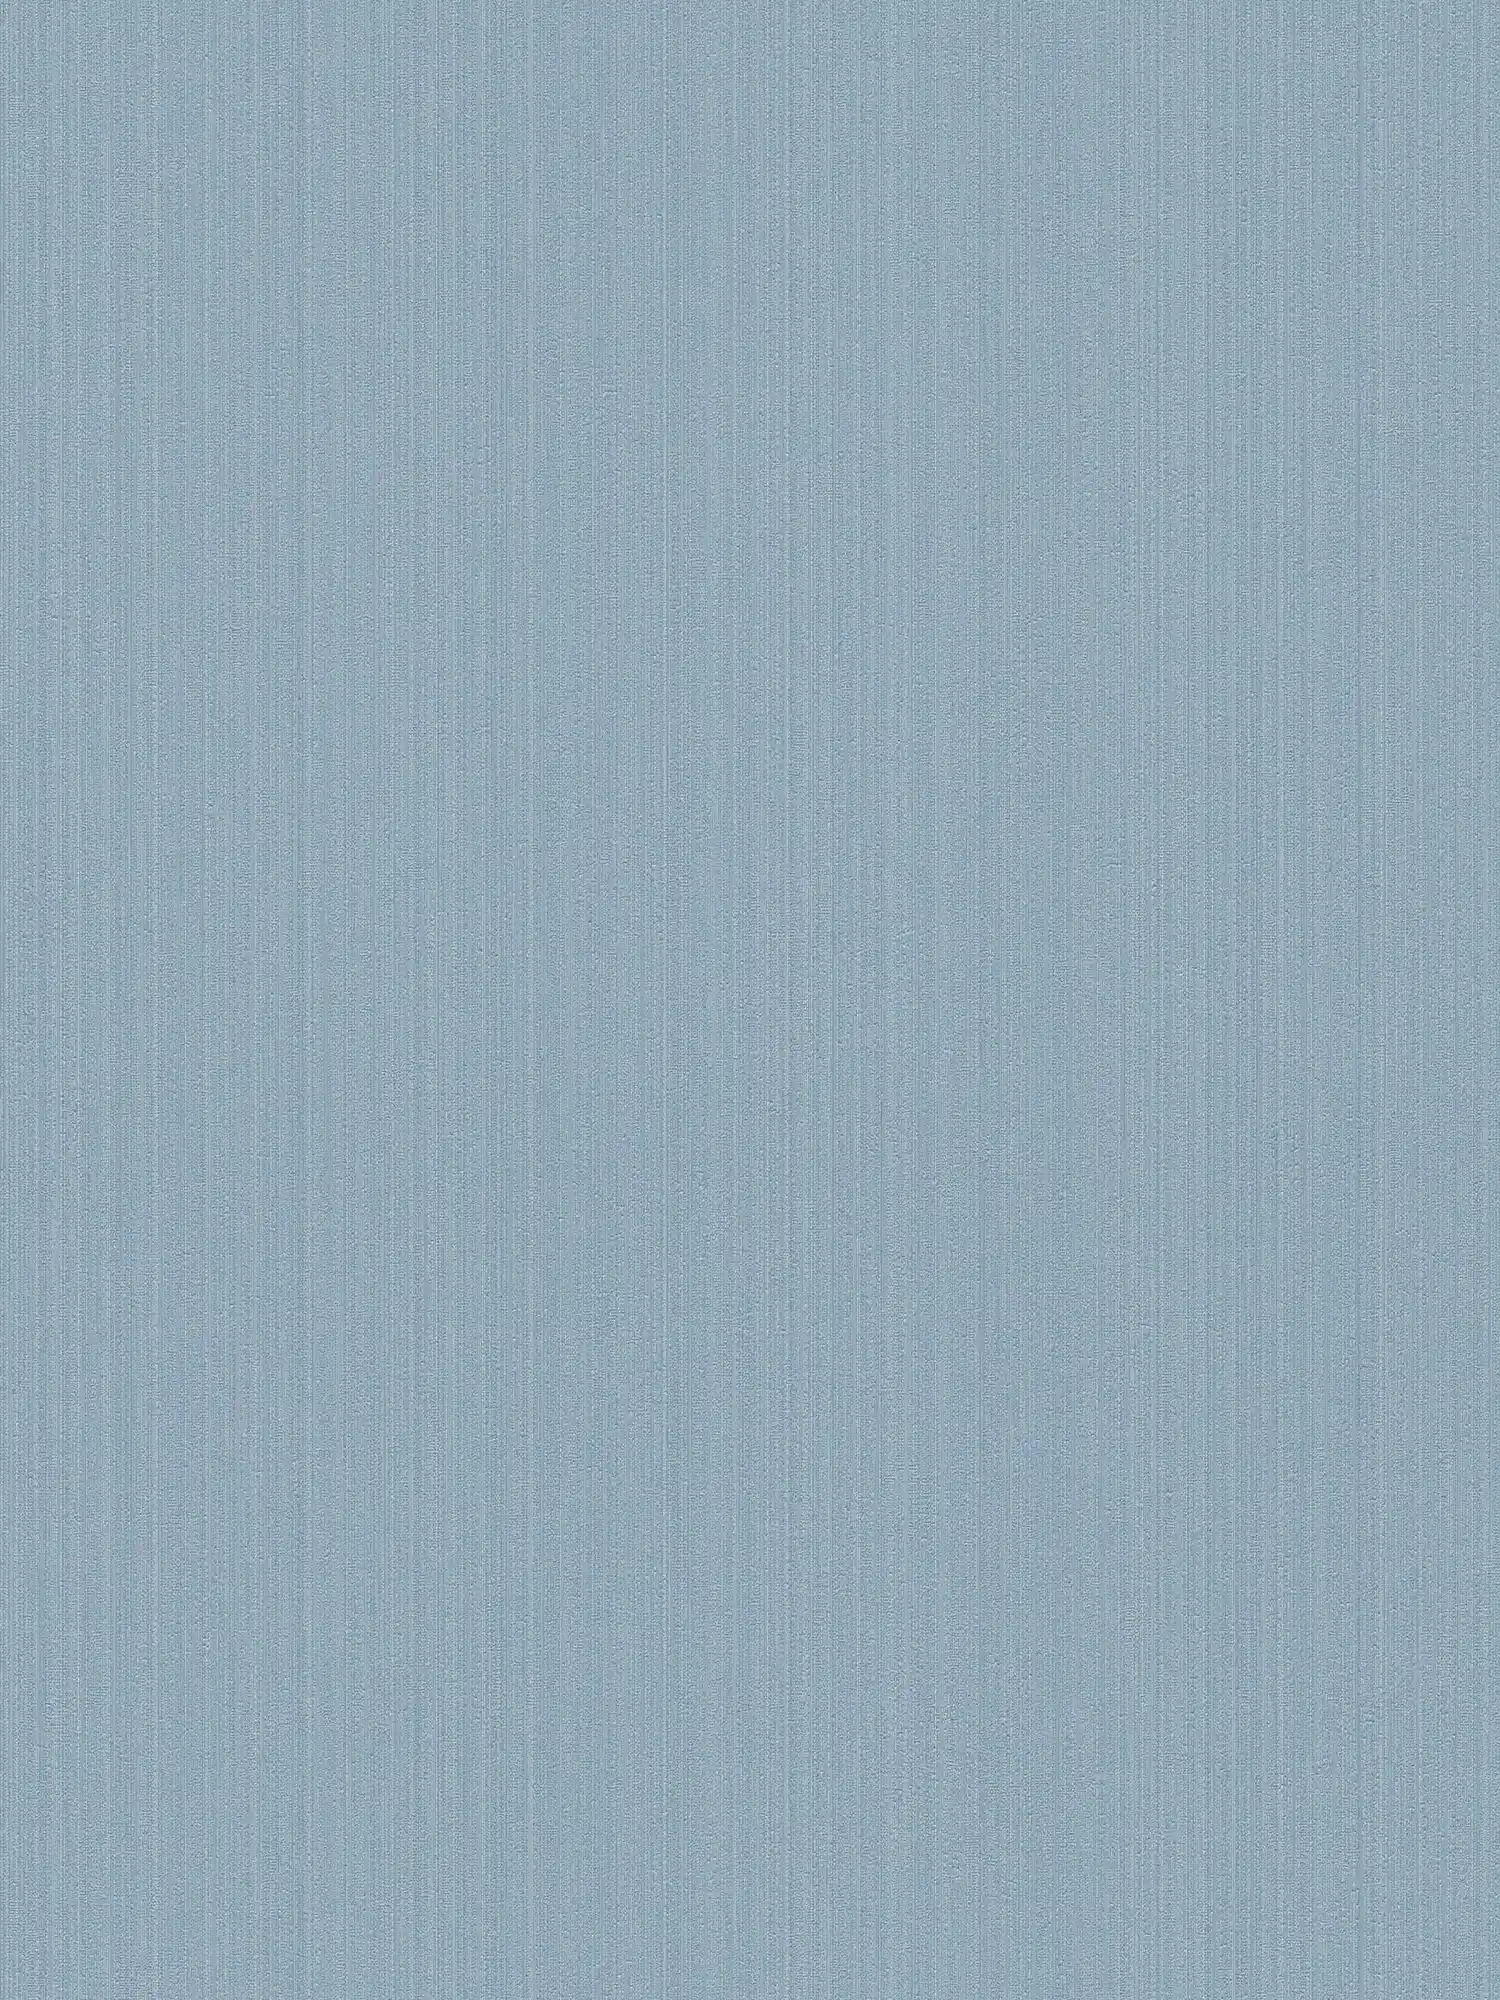 papier peint intissé bleu uni, satiné avec effet structuré
